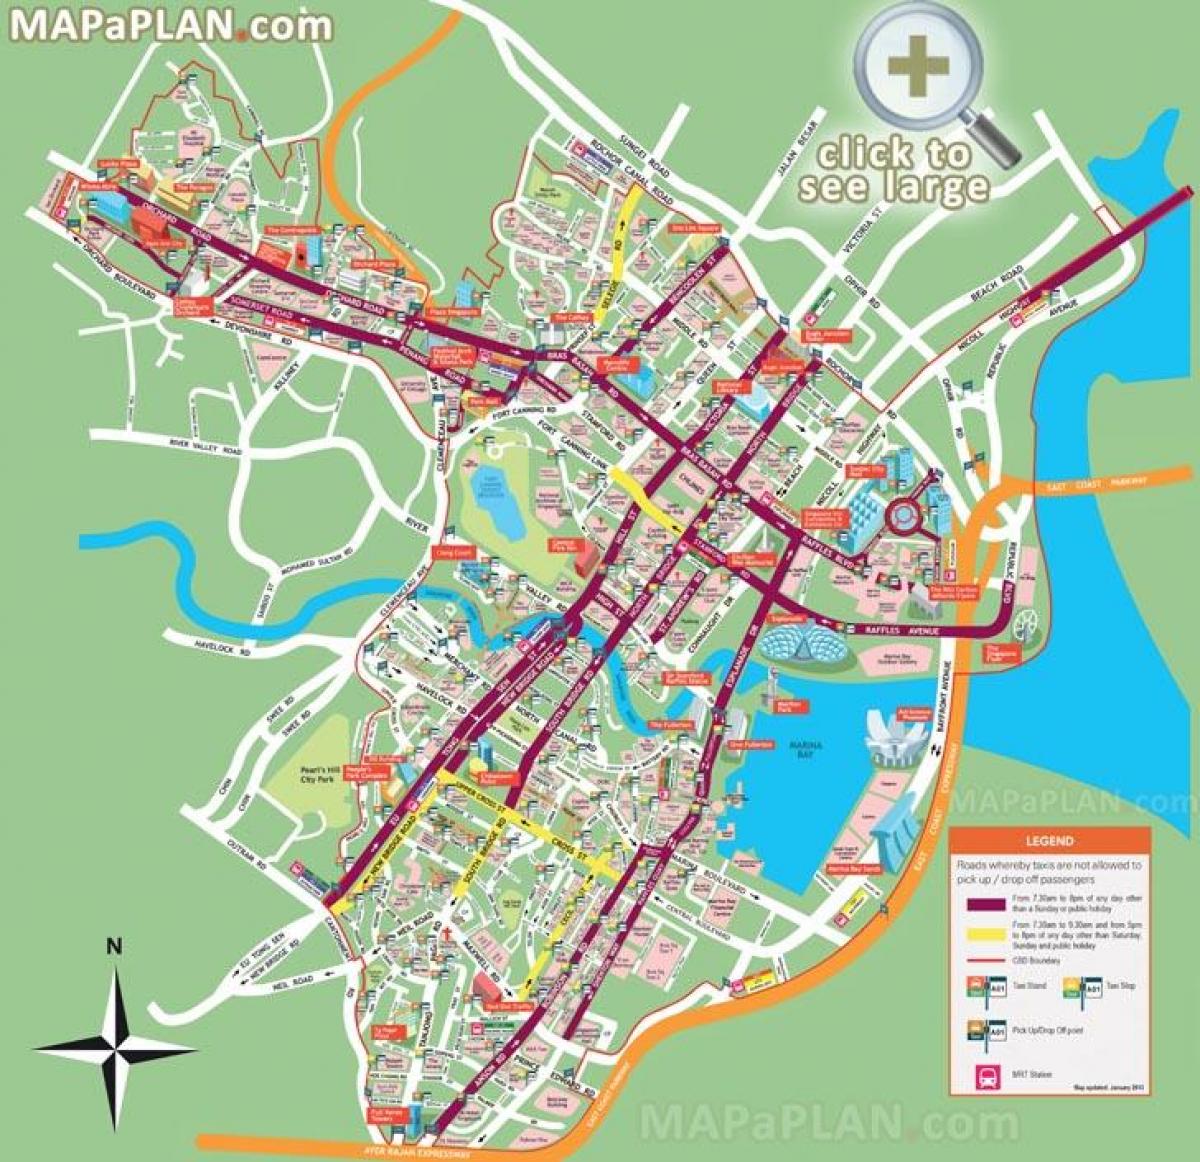 Սինգապուրի տեսարժան վայրերը քարտեզի վրա